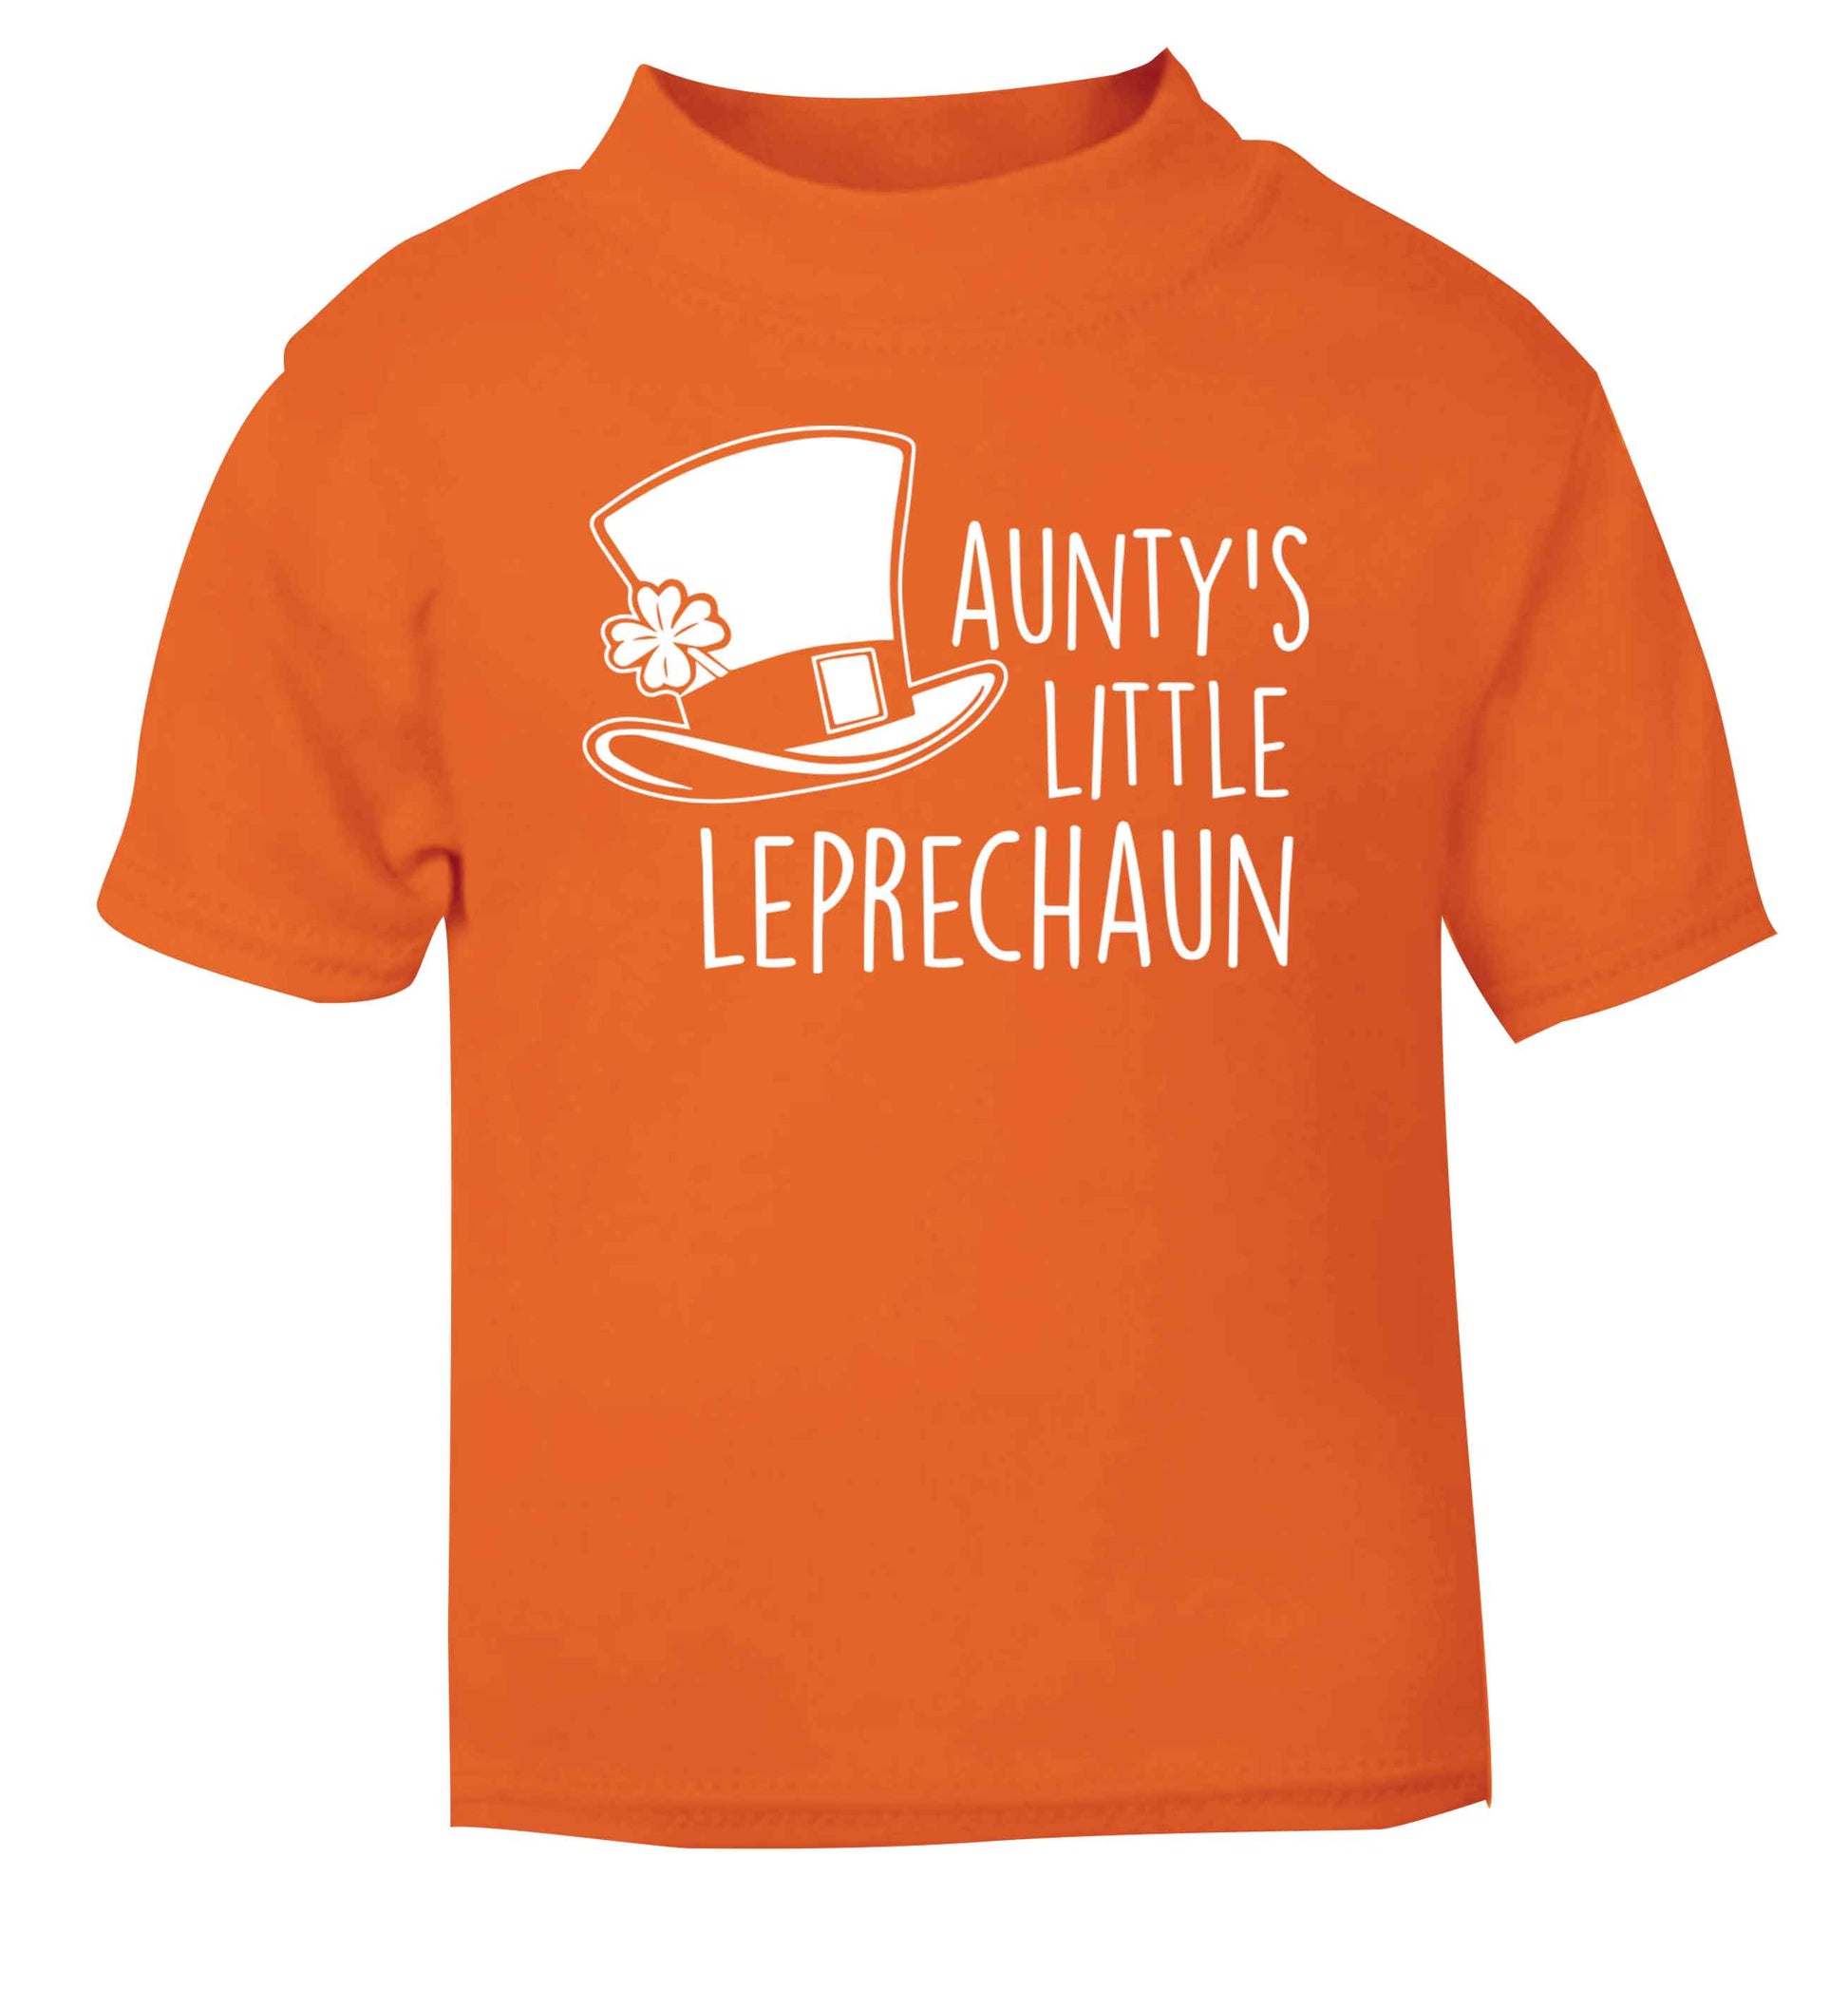 Aunty's little leprechaun orange baby toddler Tshirt 2 Years